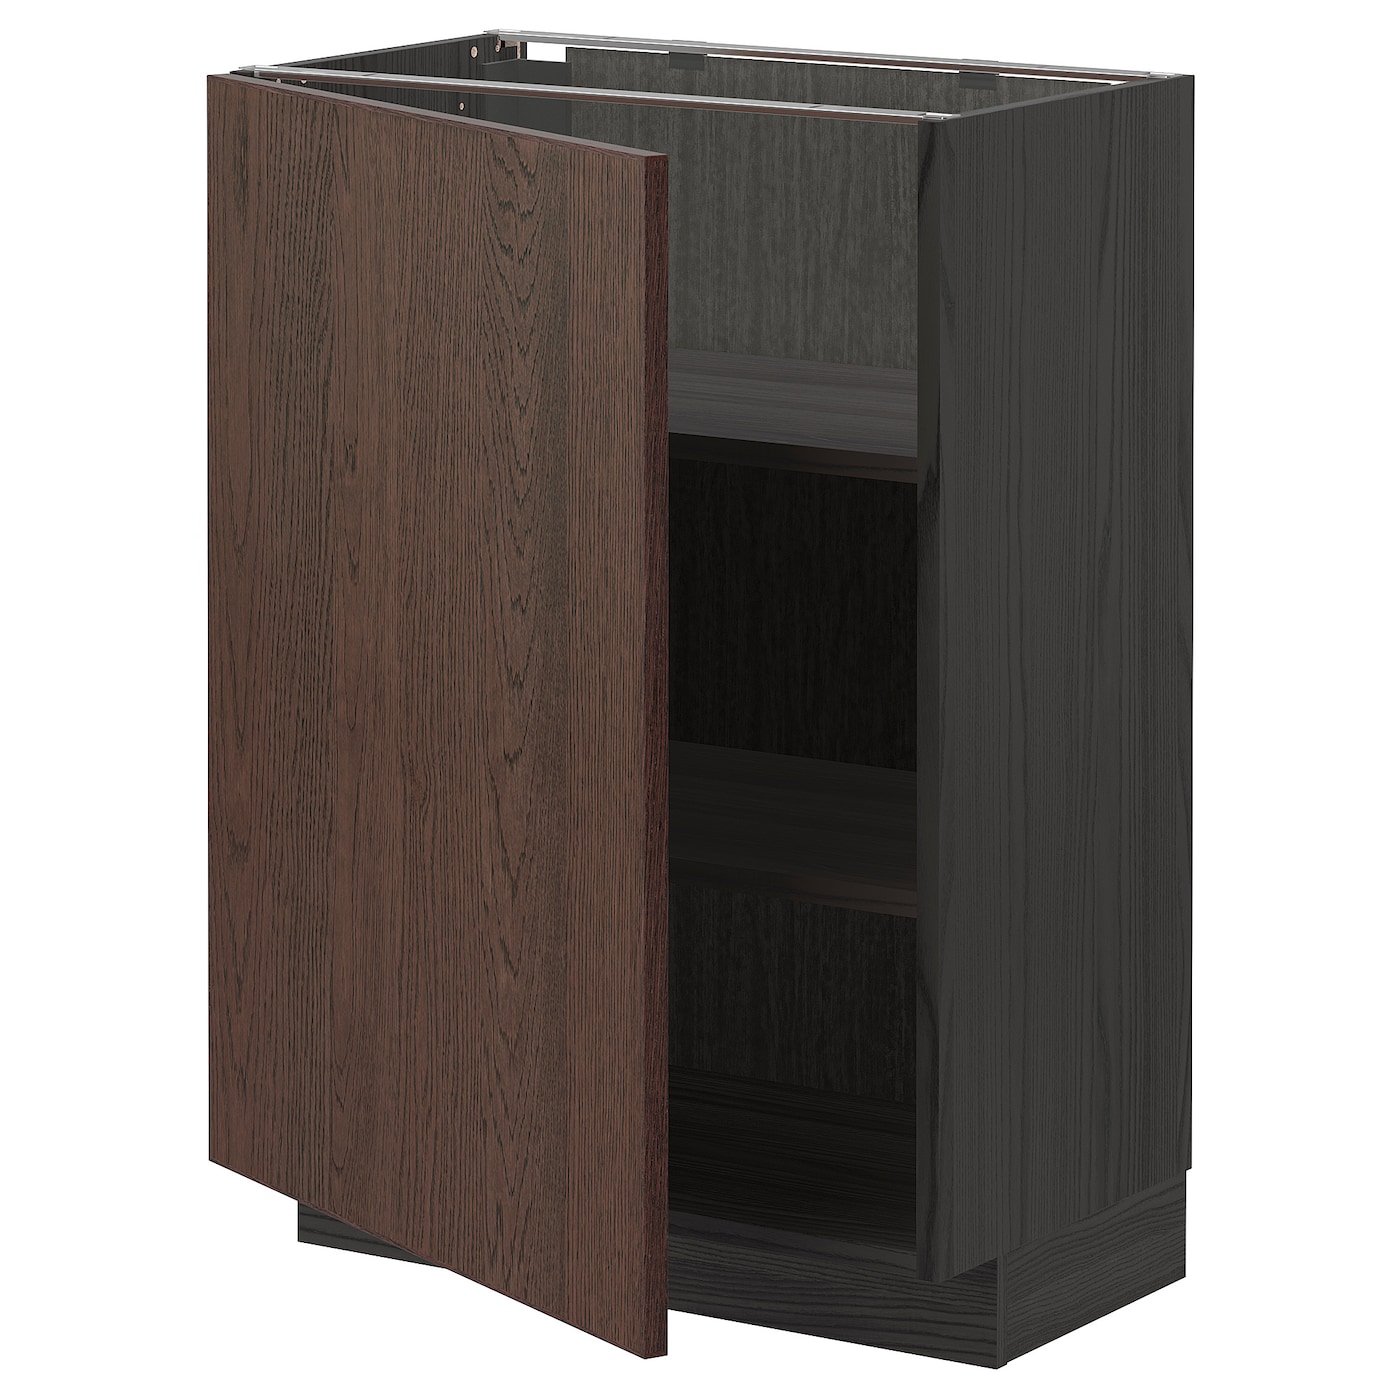 Напольный шкаф - METOD IKEA/ МЕТОД ИКЕА,  88х60 см, черный/коричневый